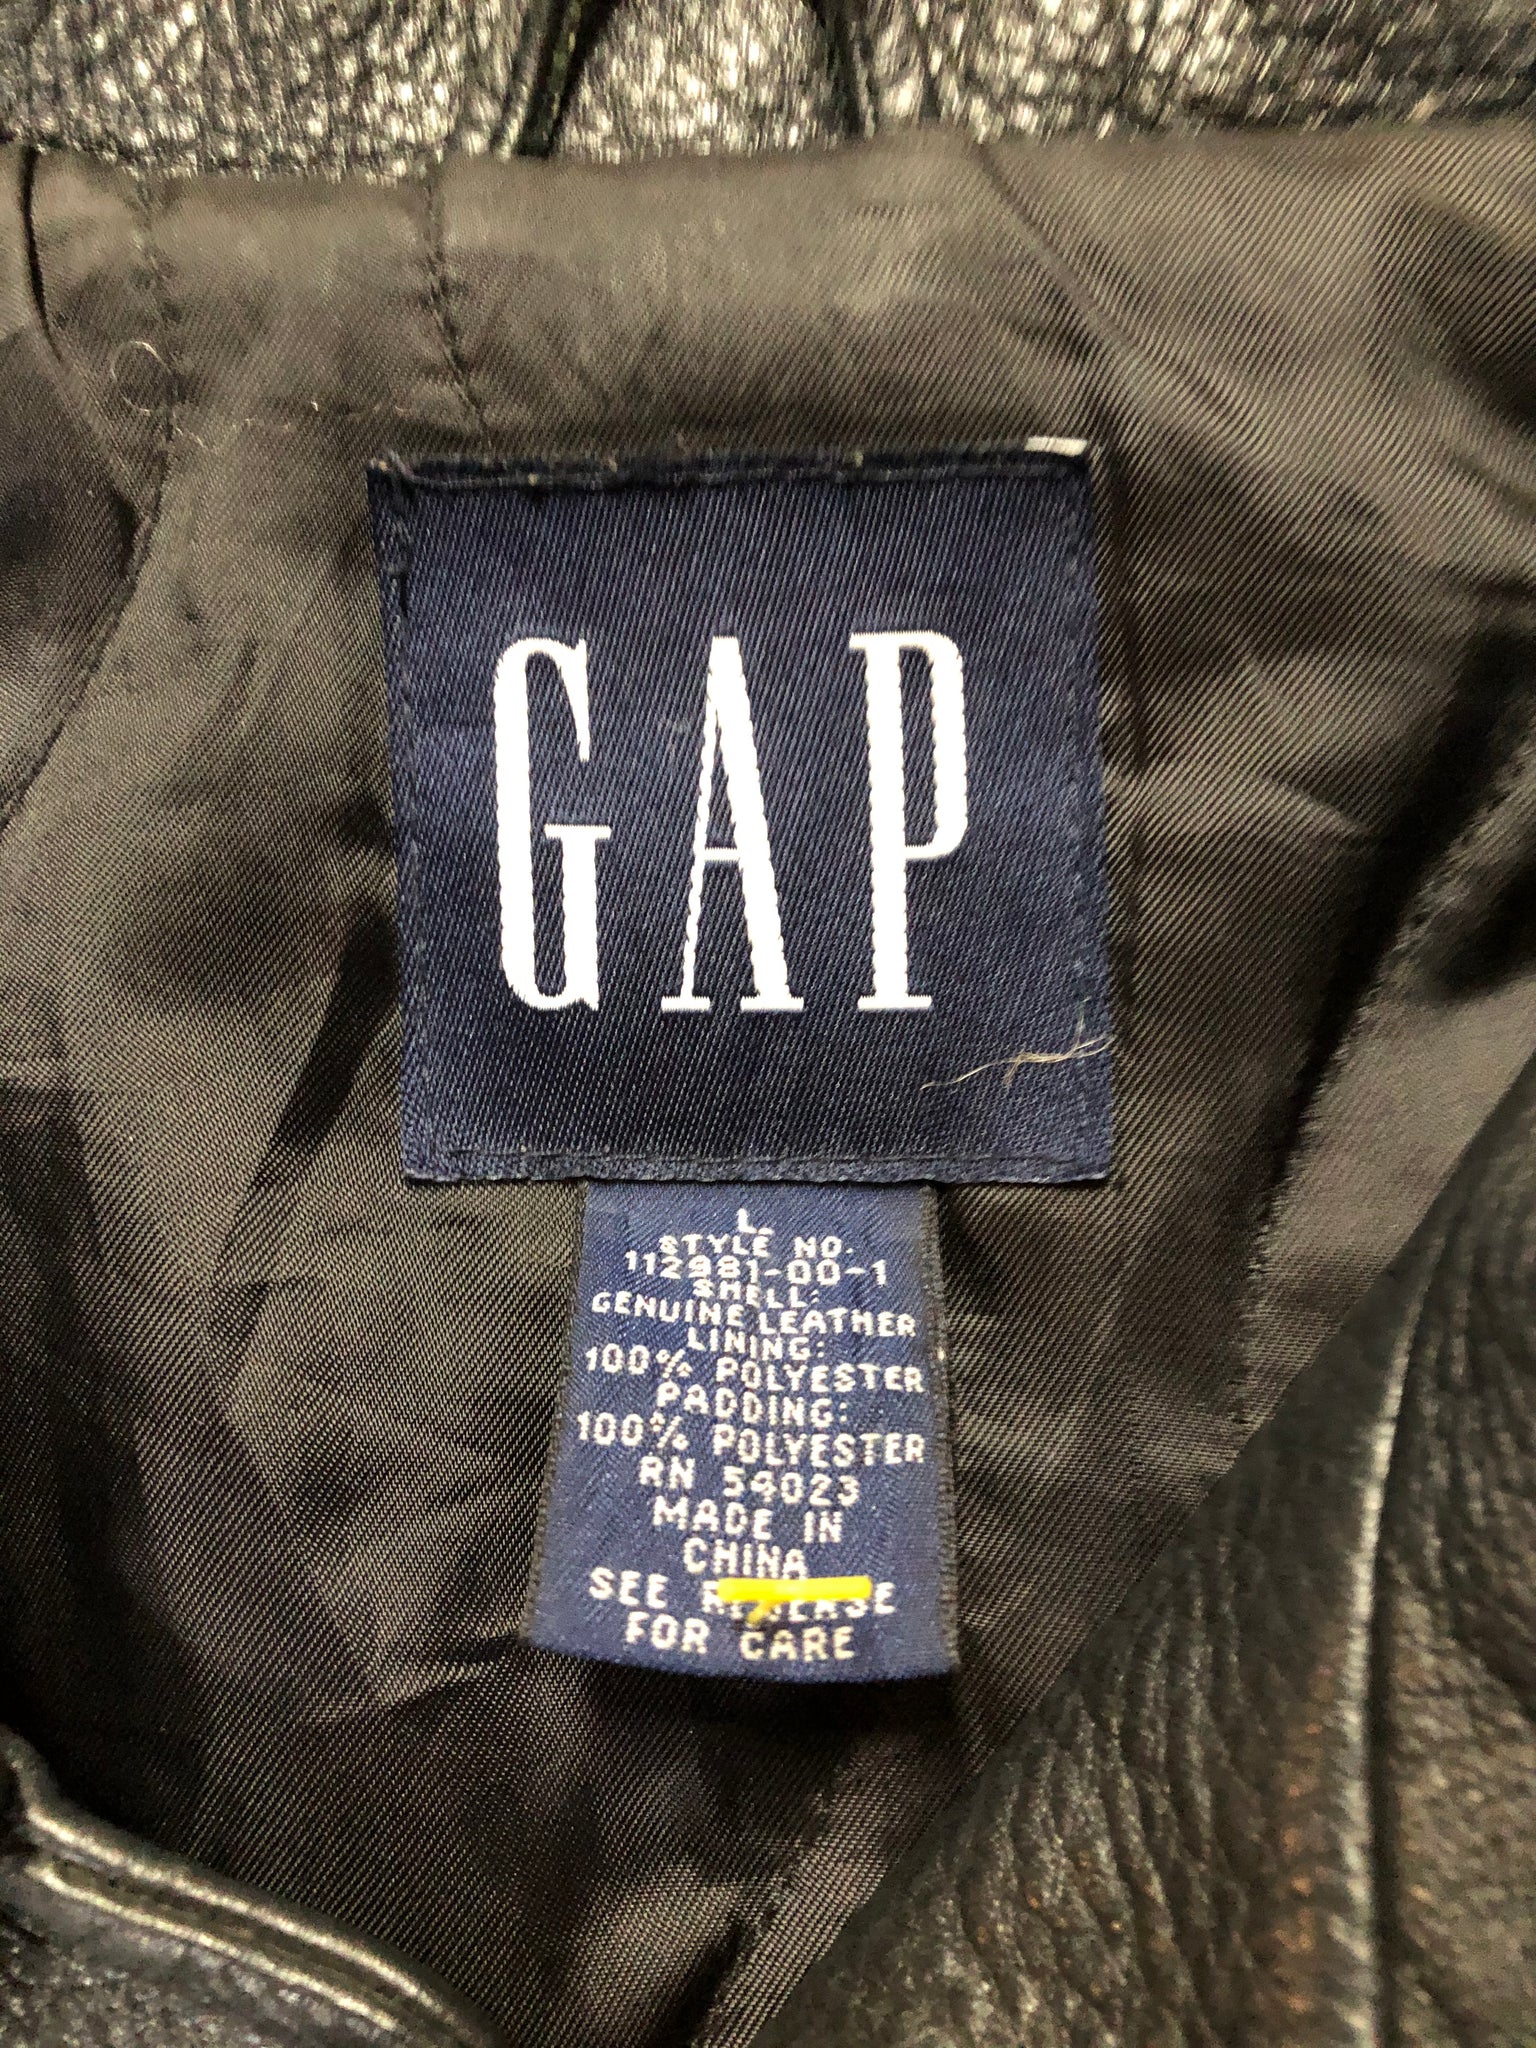 Gap Black Leather Jacket – KingsPIER vintage